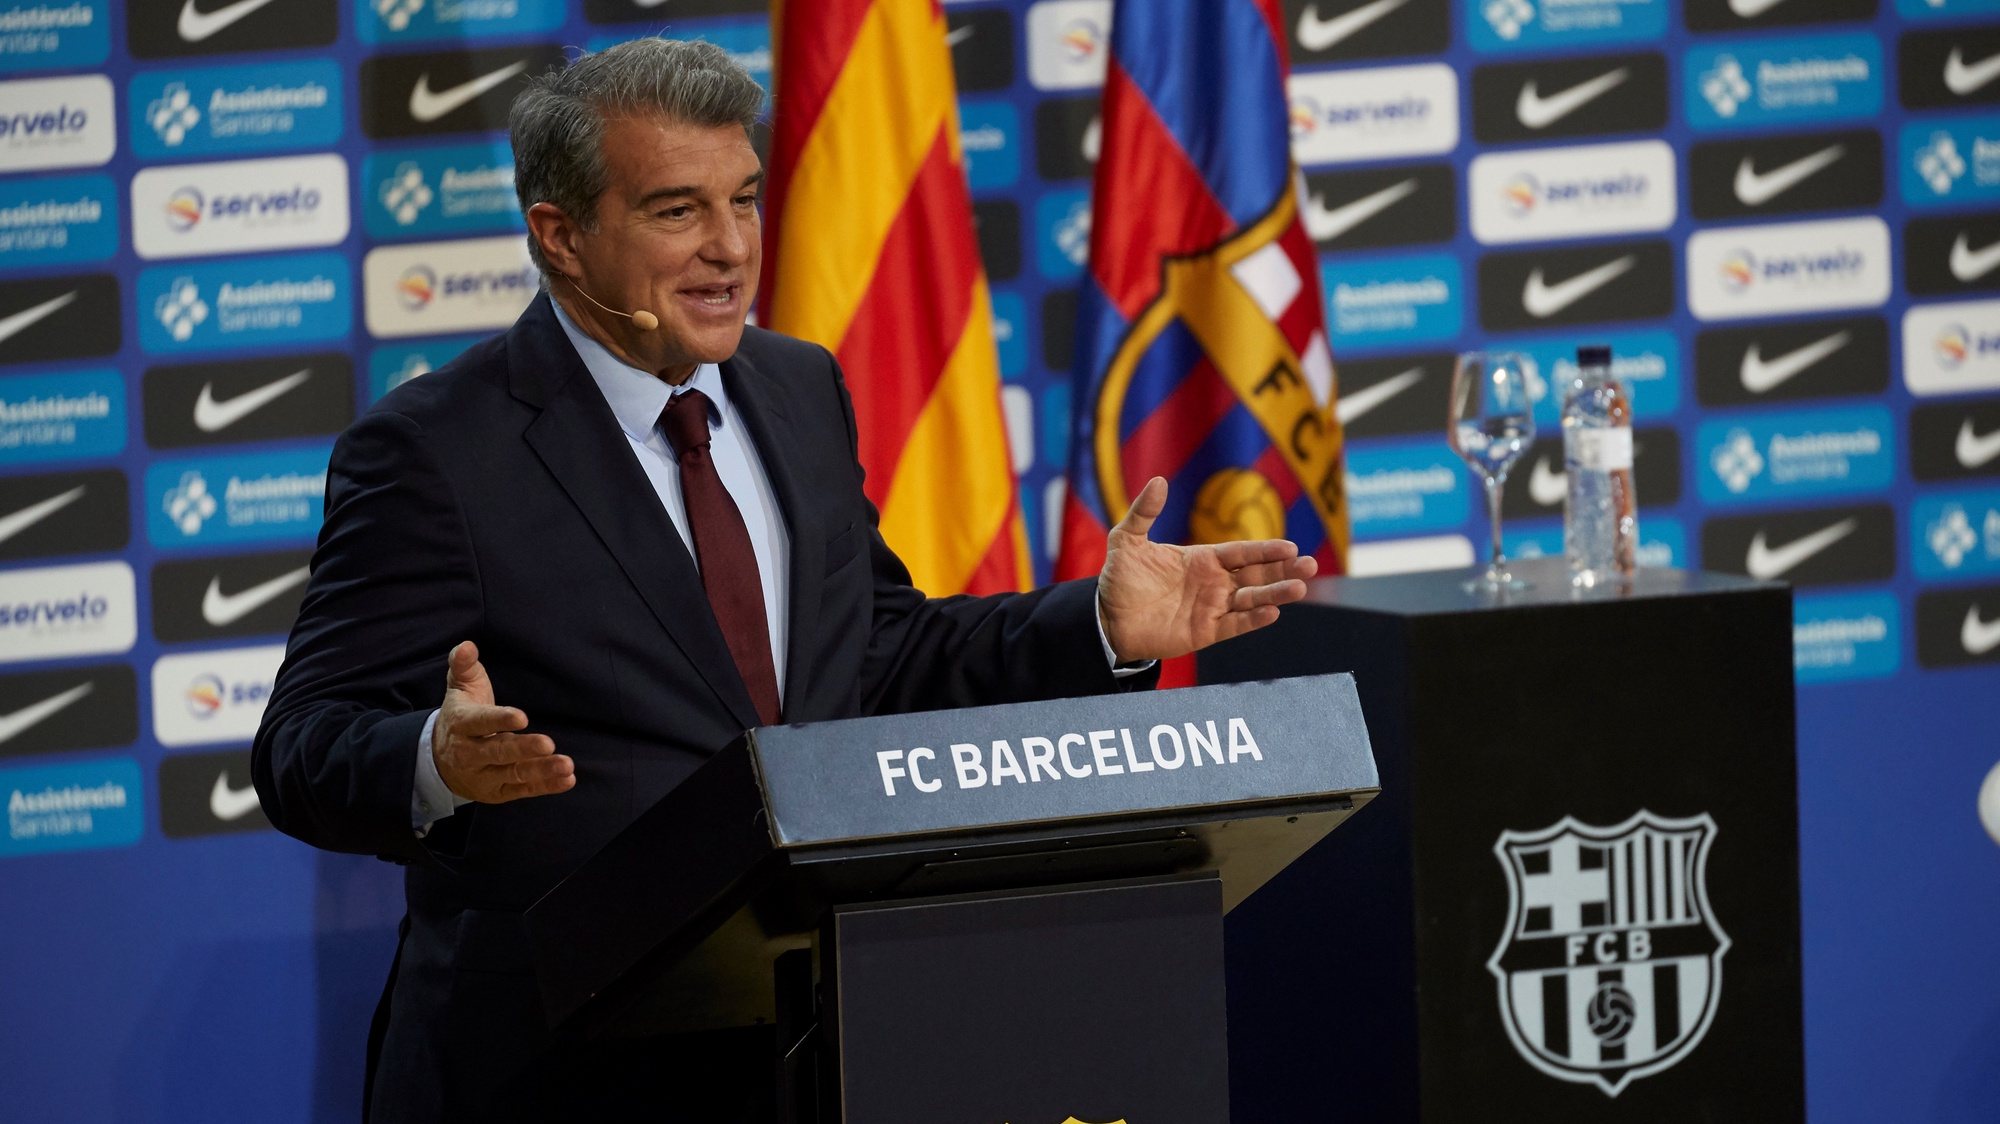 Barcelona está acima do melhor jogador do mundo', diz presidente do clube